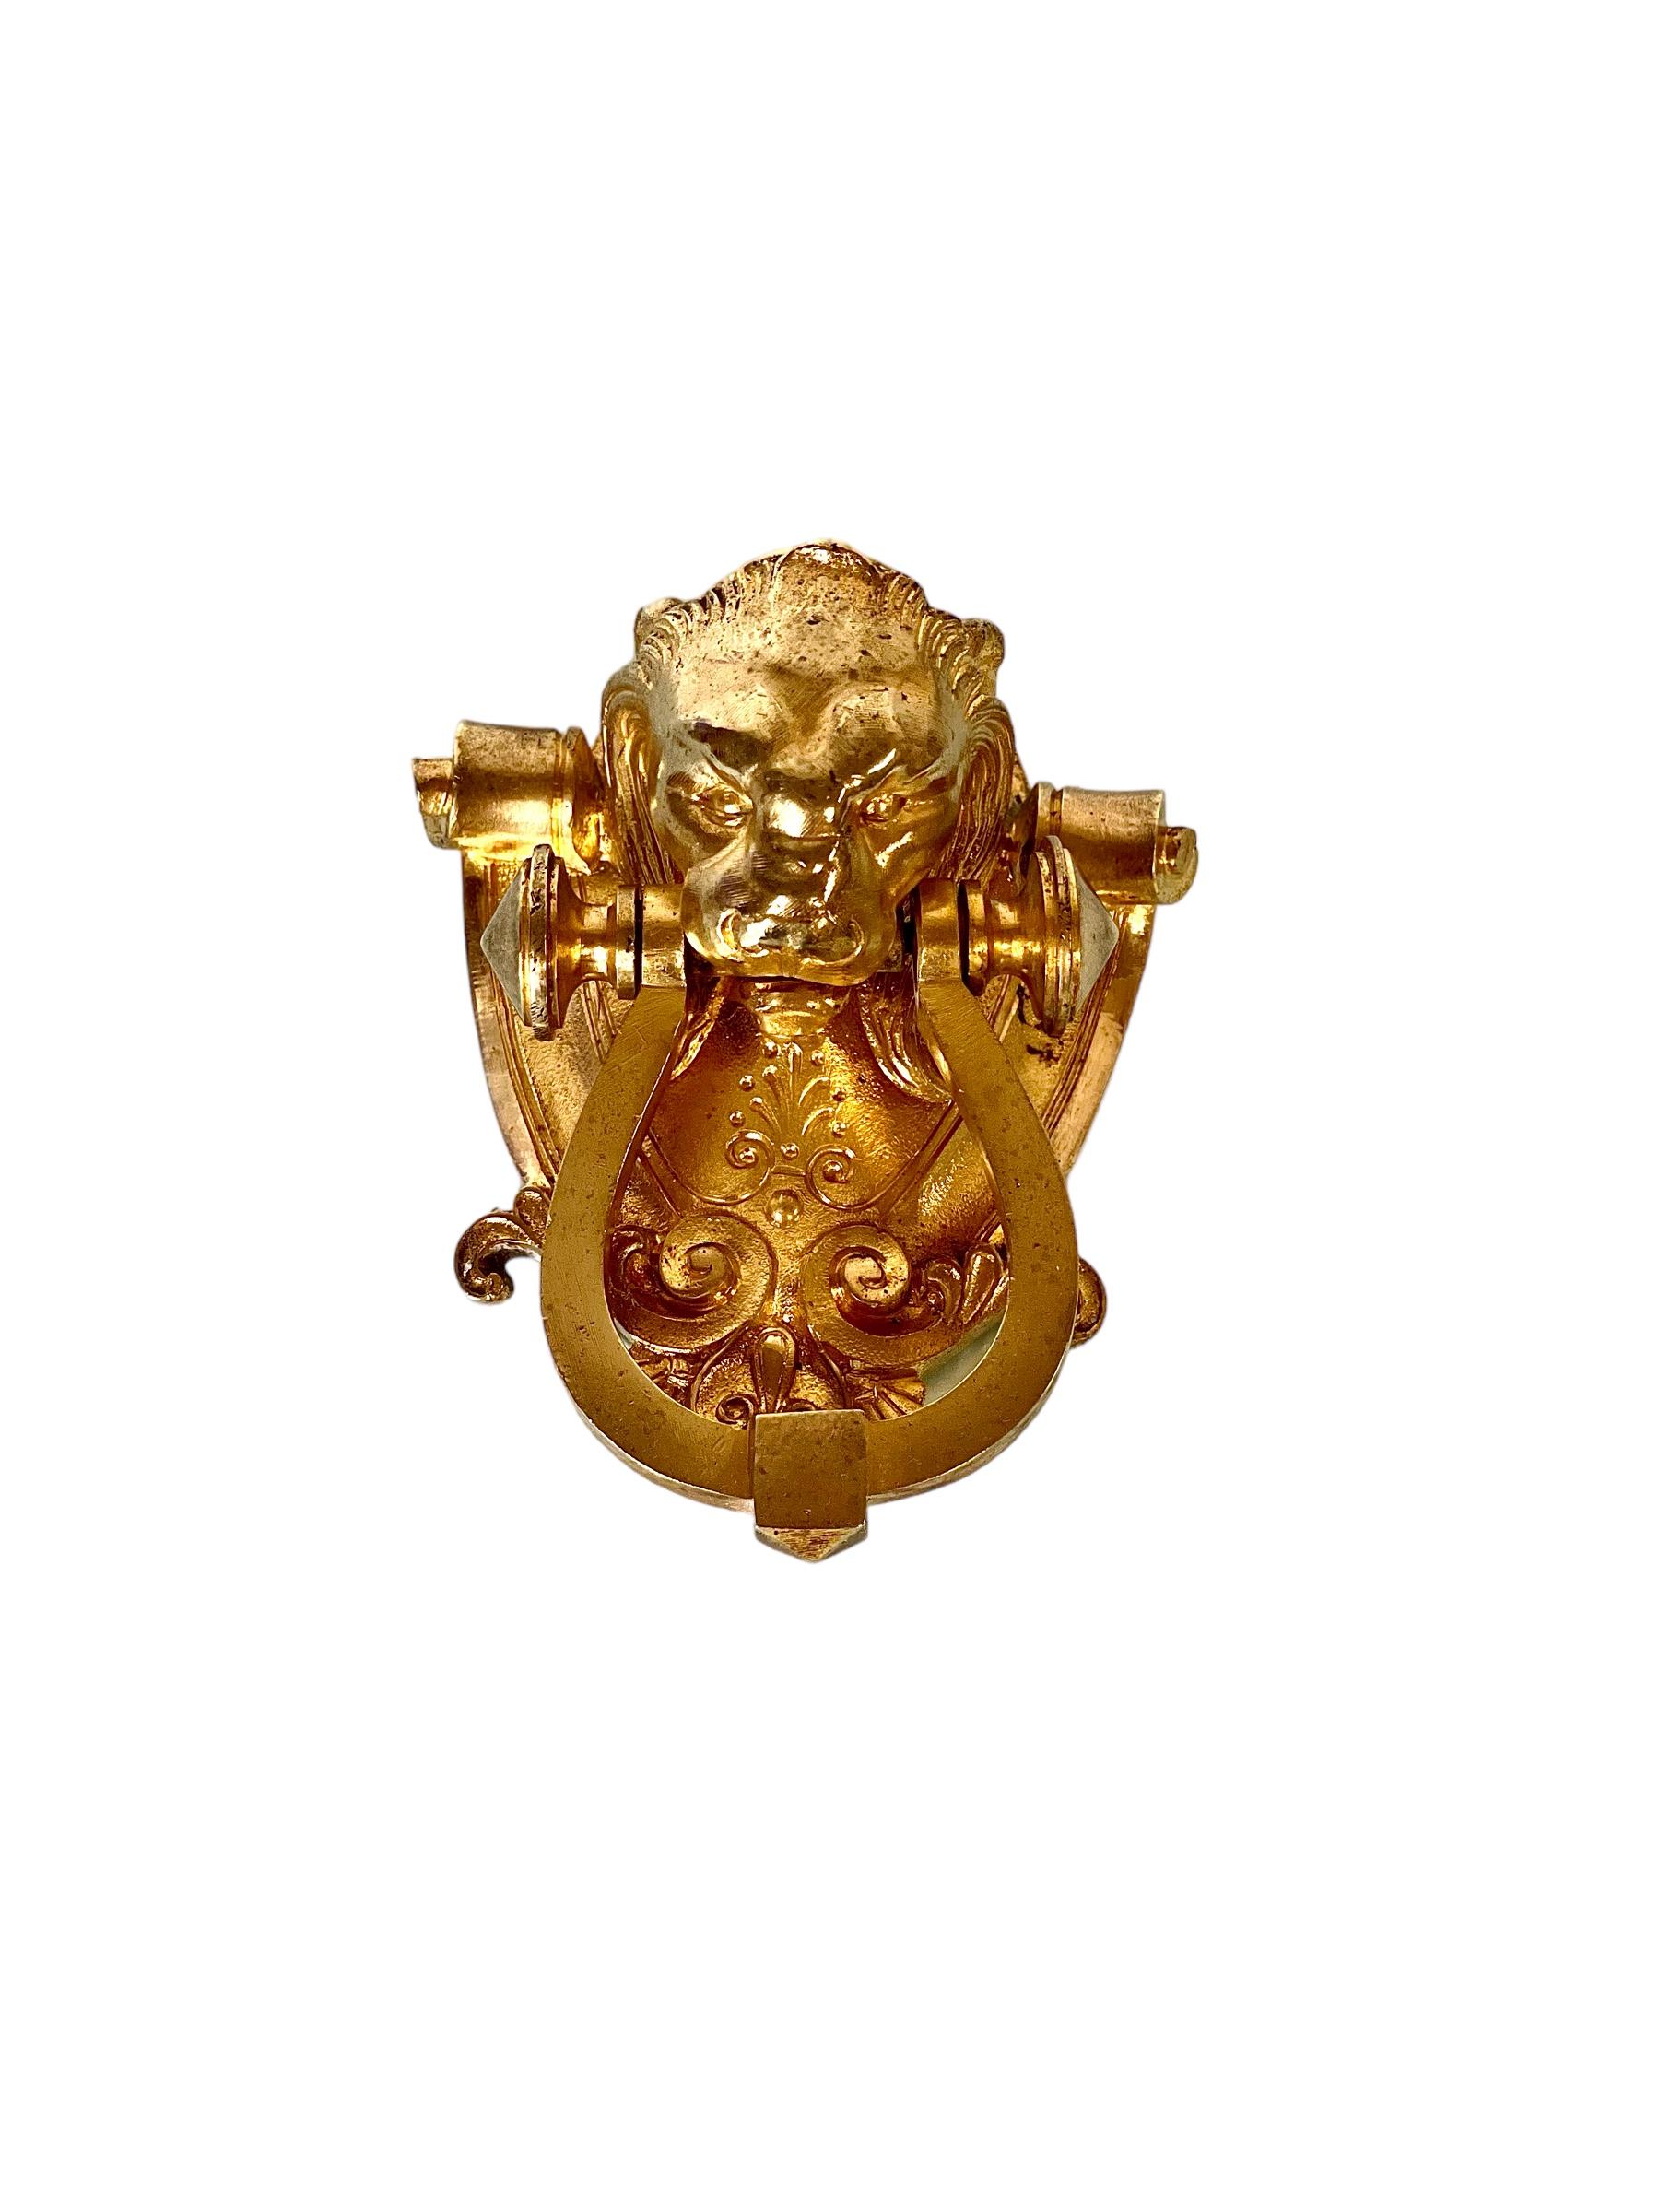 Un fabuleux heurtoir de porte antique à tête de lion en bronze doré, datant du 19e siècle. Traditionnellement considéré comme le roi des animaux, la tête de lion symbolise la puissance, la force, la fierté et la protection. Depuis le XIXe siècle, le